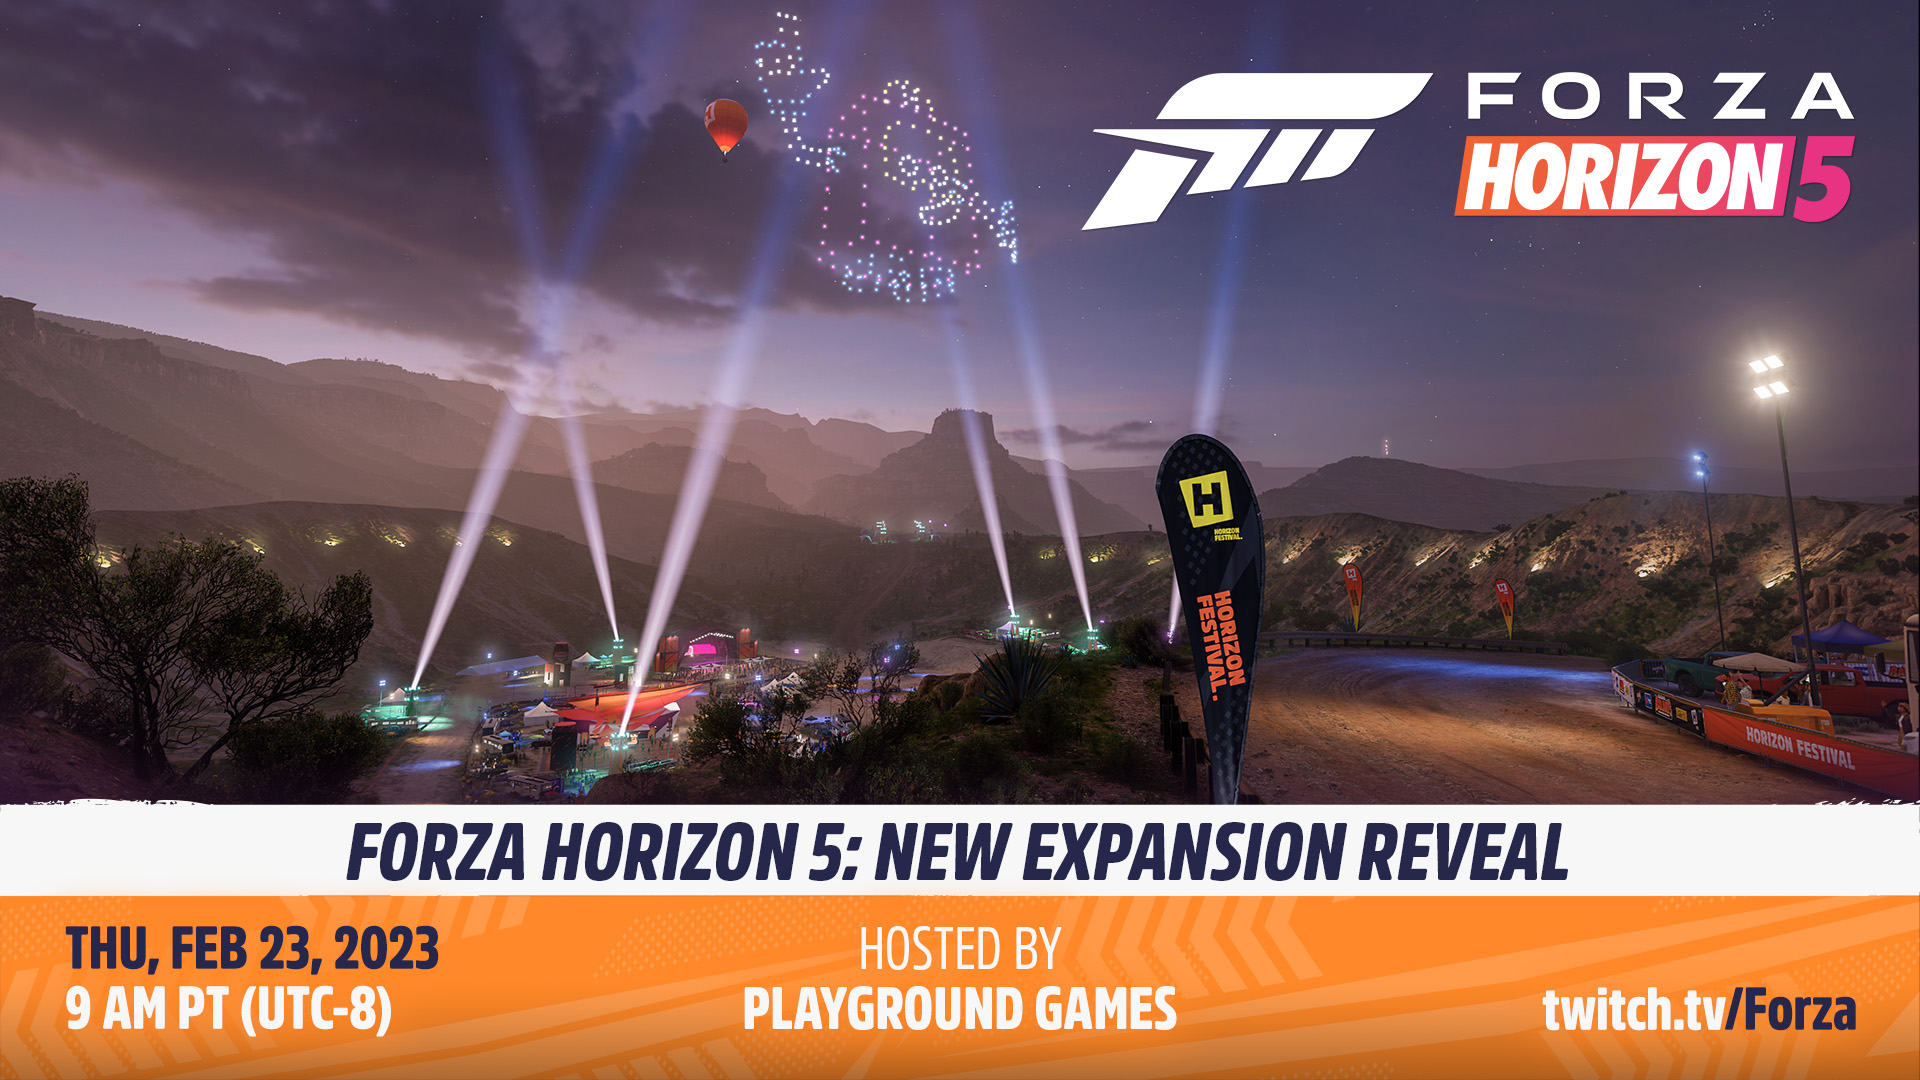 Второе дополнение для Forza Horizon 5 представят 23 февраля - фото 1